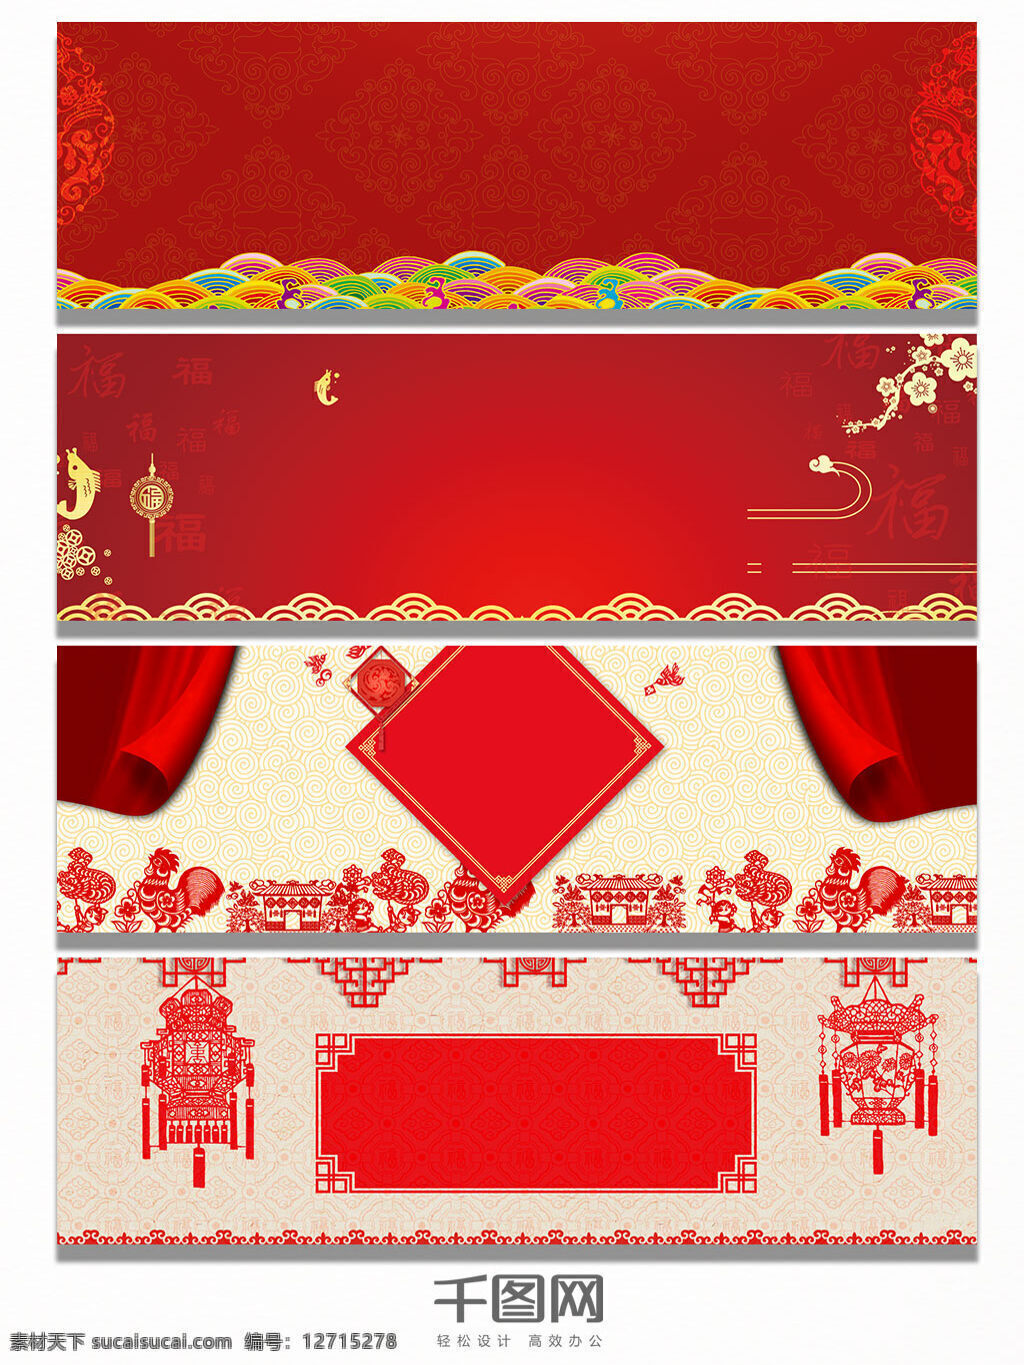 红色 云纹 狼 纹 剪纸 banner 背景 狼纹 红色背景 中国风 中国传统 节日 喜庆